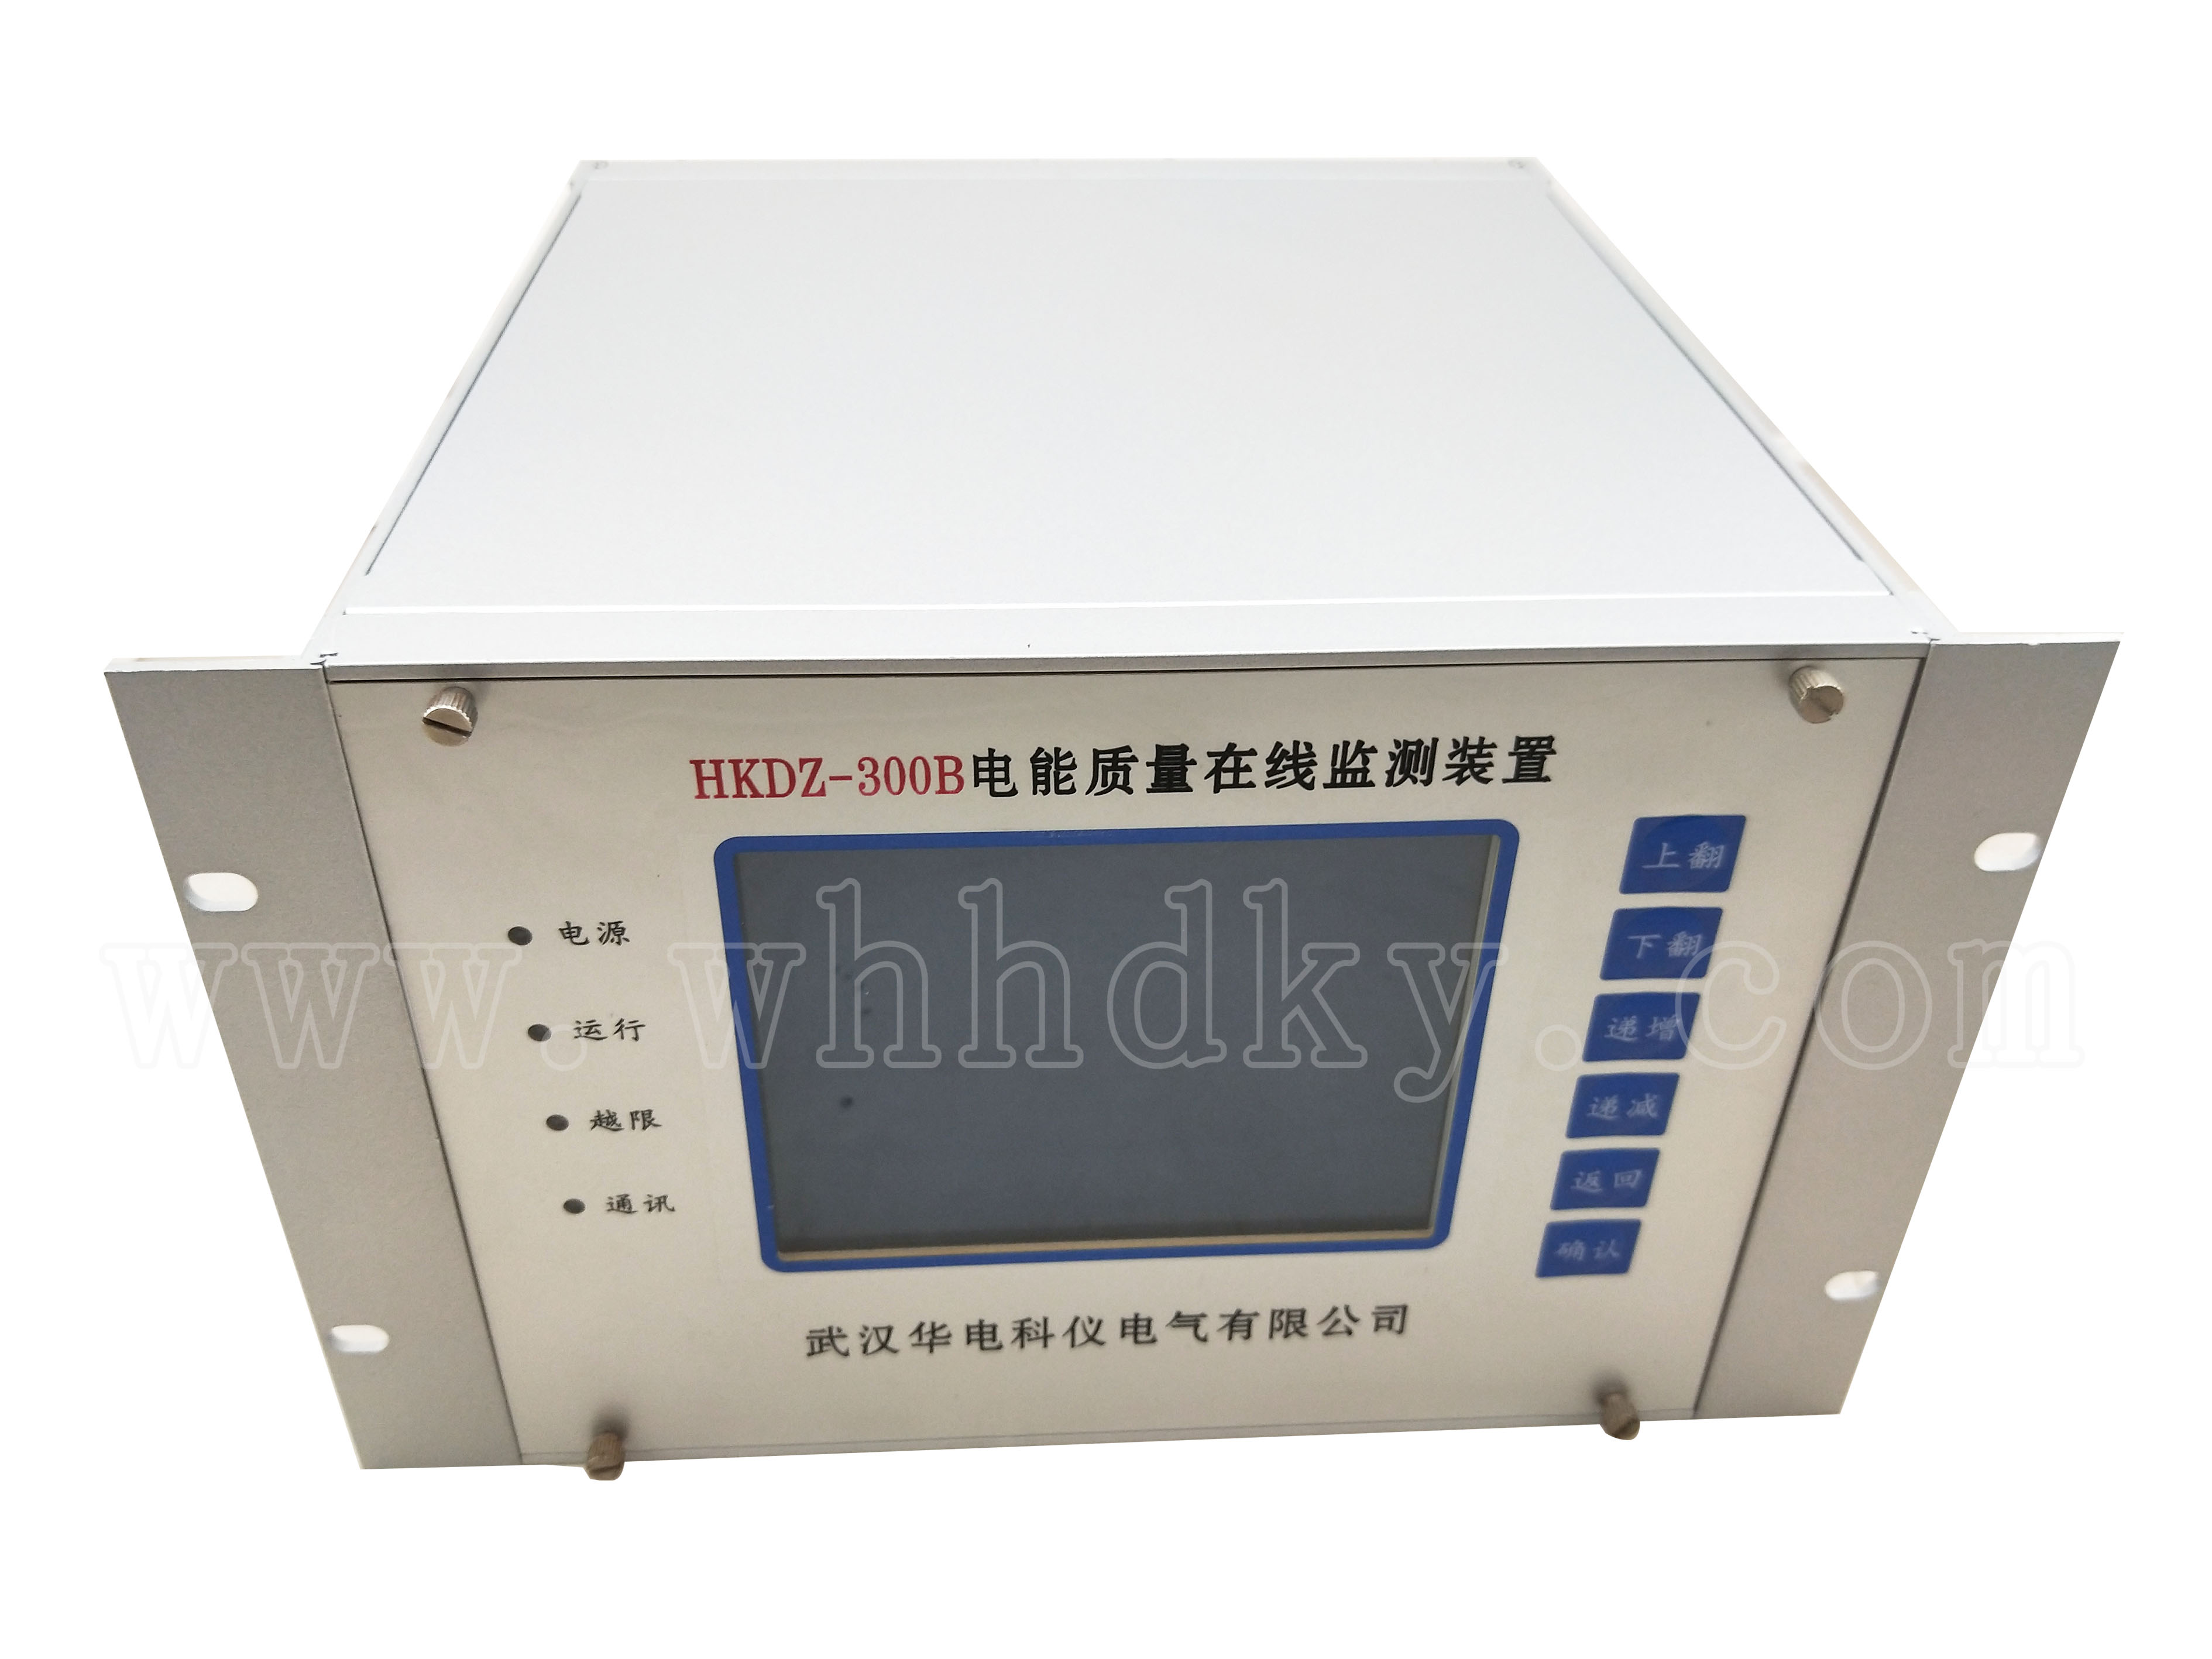 HKDZ-300B在线式电能质量监测装置